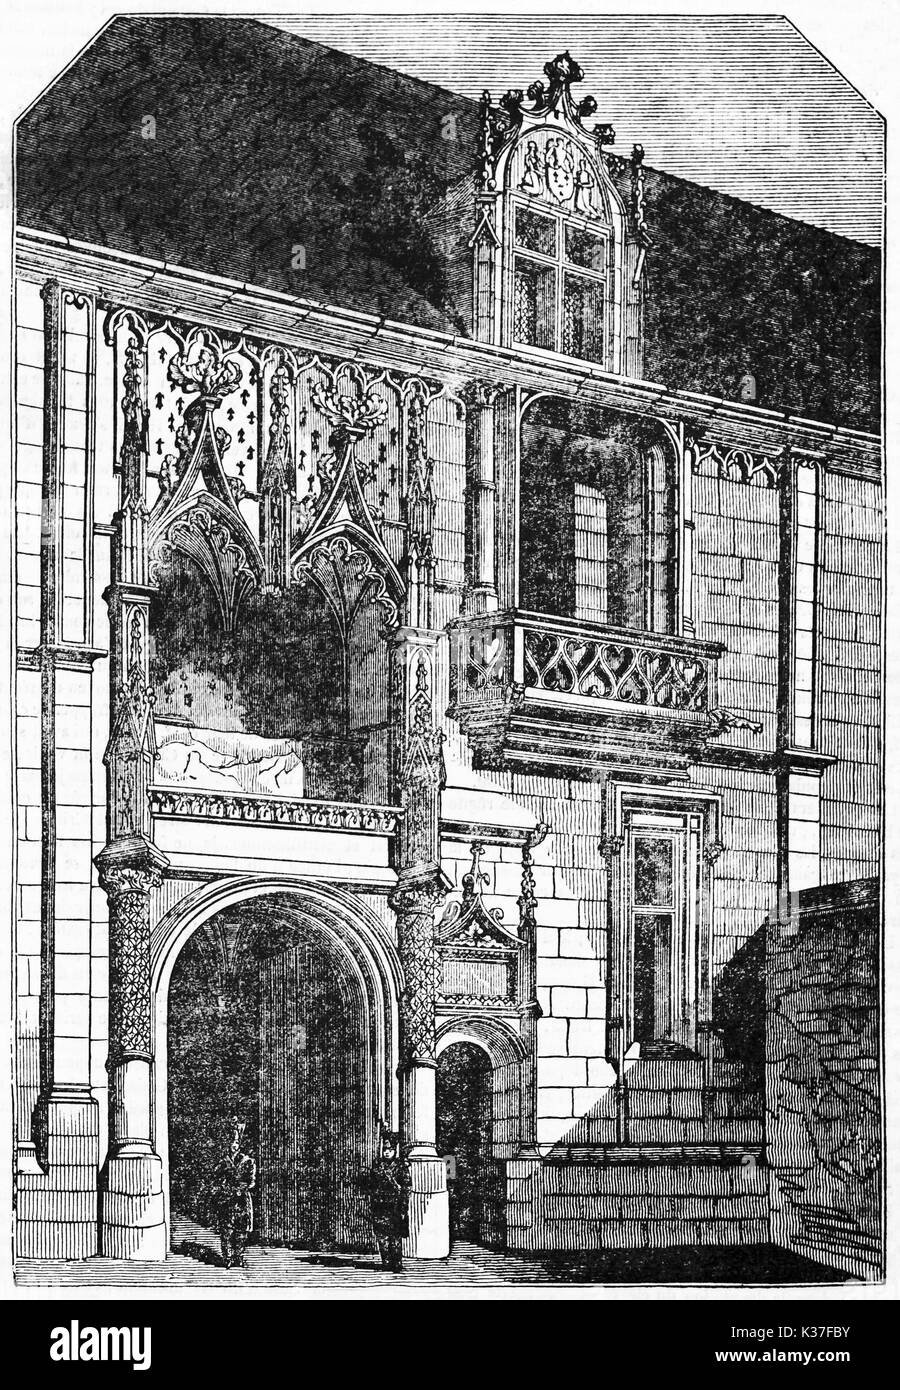 Vue avant de l'ancien château de Blois portail (façade est), majestueux, élégant et aristocratique de l'architecture. Vieille Illustration d'auteur non identifié publié le magasin pittoresque Paris 1834 Banque D'Images